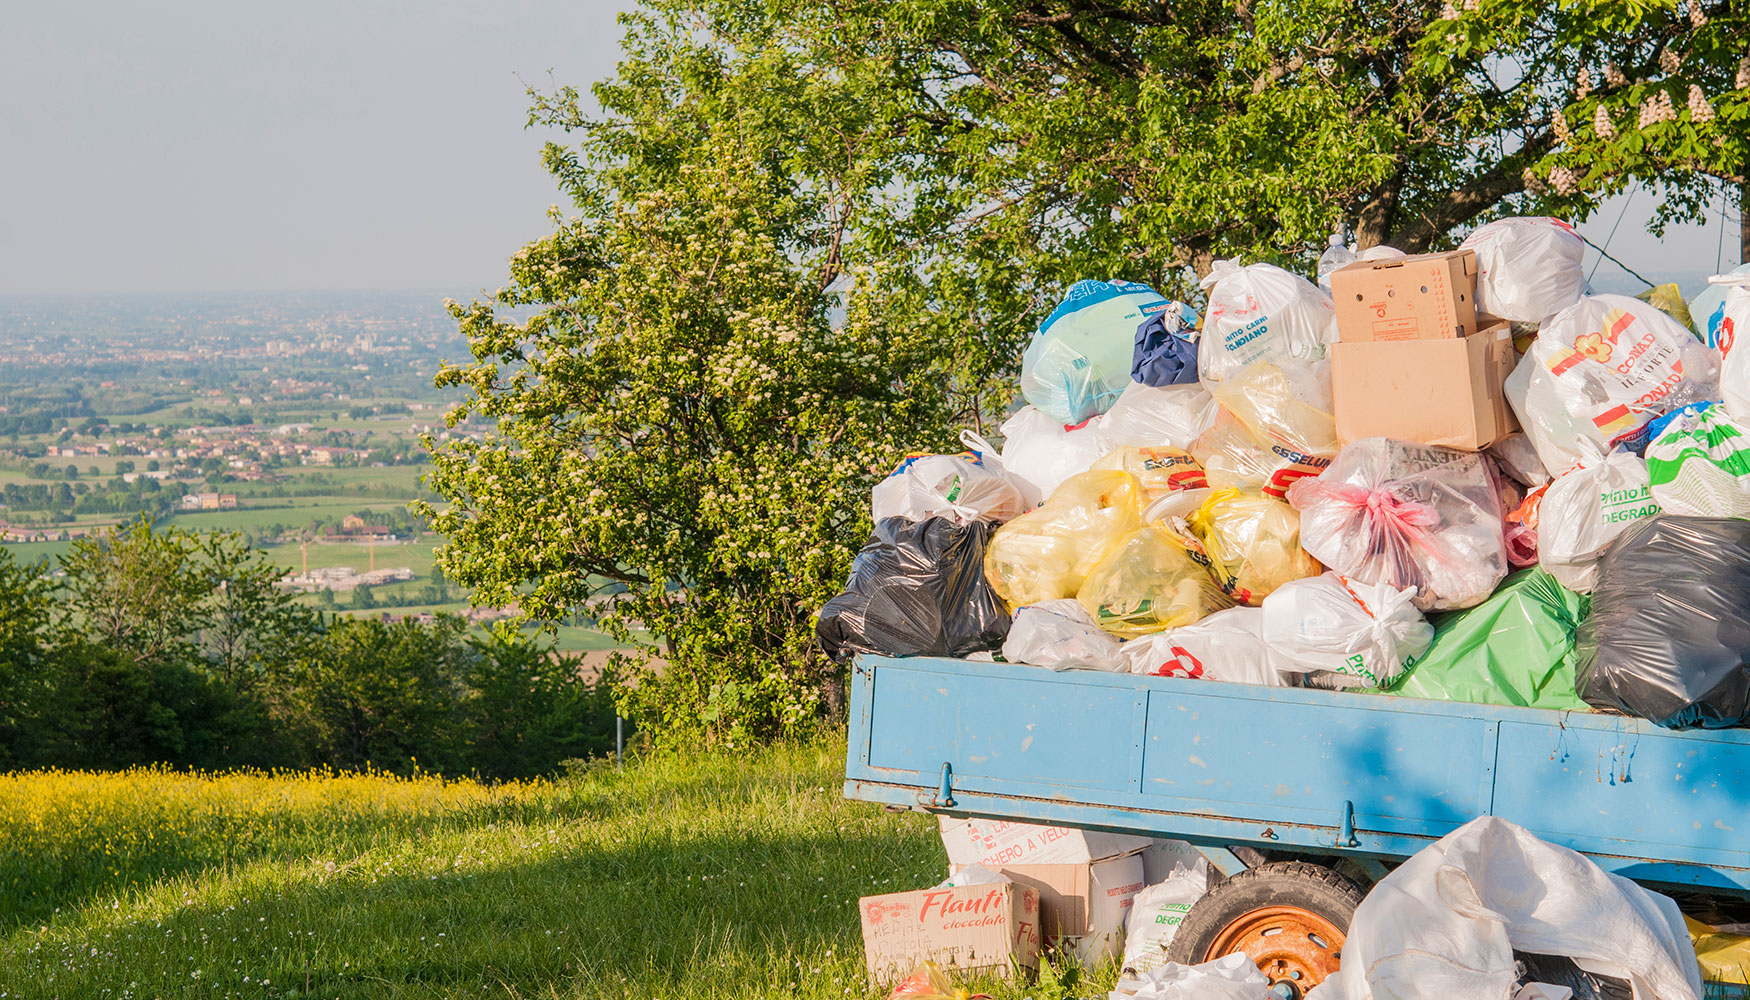 El abandono y acumulacin de basura en entornos naturales se ha convertido en un problema generalizado que est impactando de forma muy negativa en...